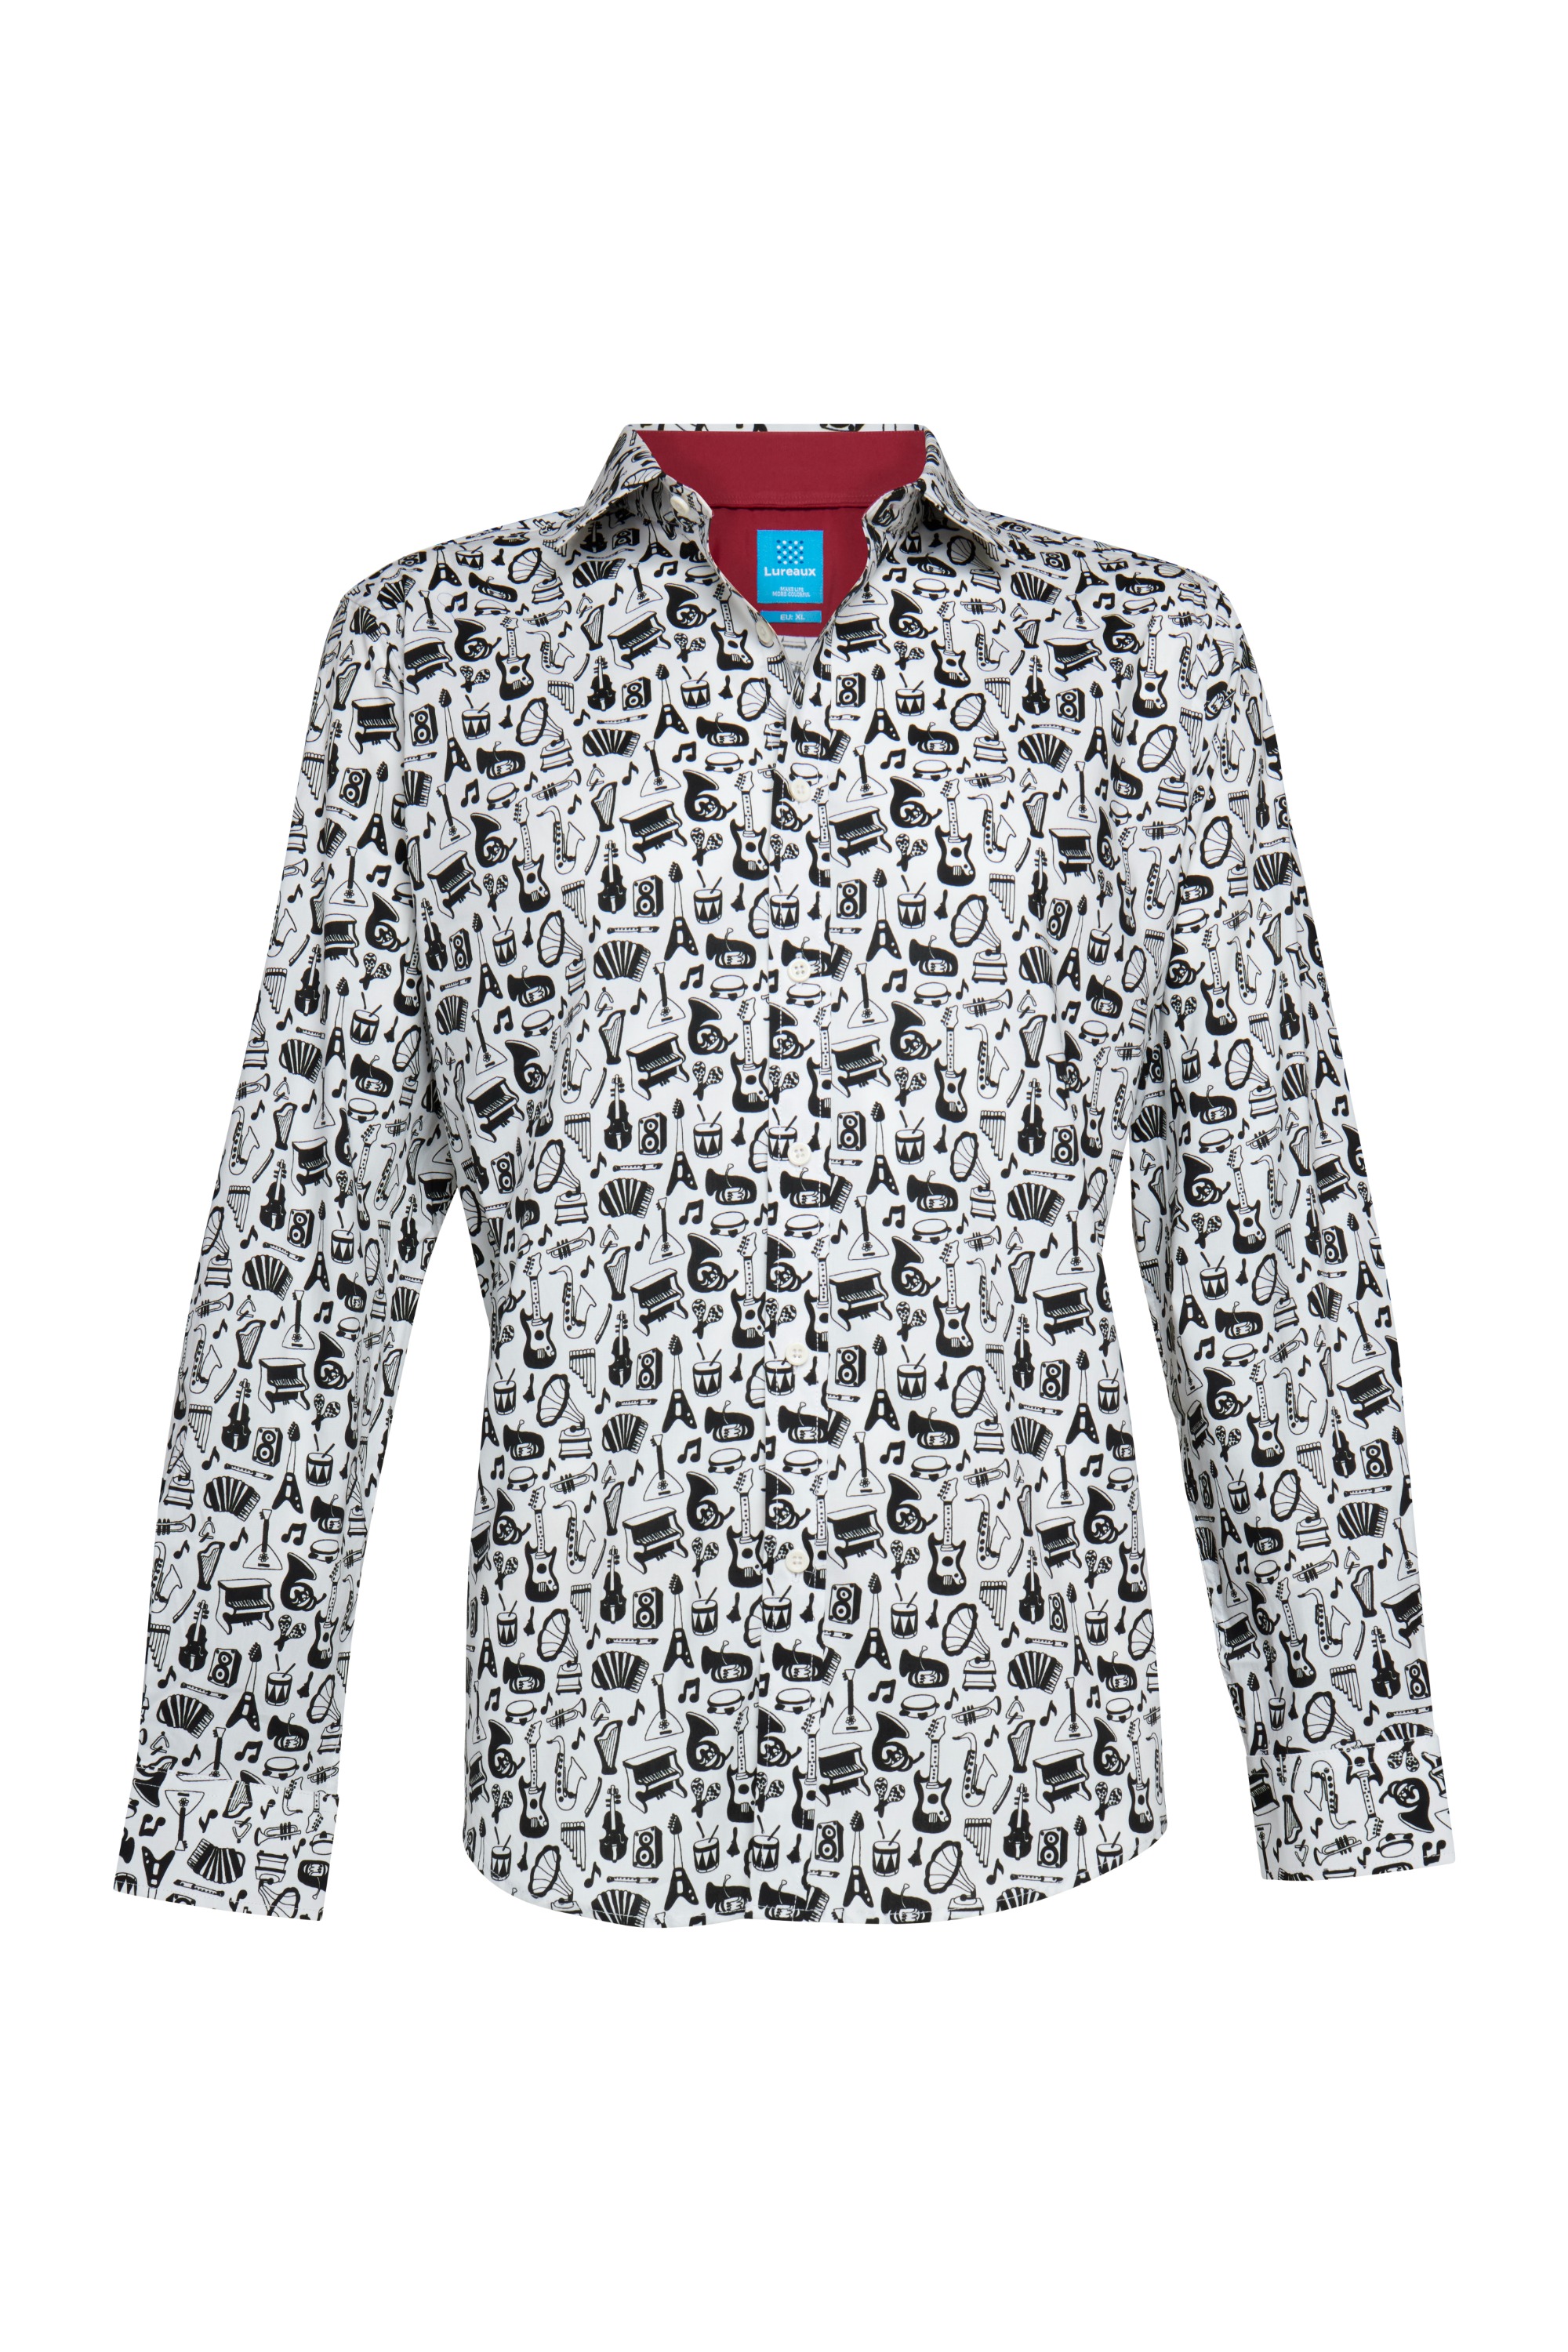 Melody Makers Overhemd XL - Lureaux - Handgemaakte Nette Schoenen Voor Heren